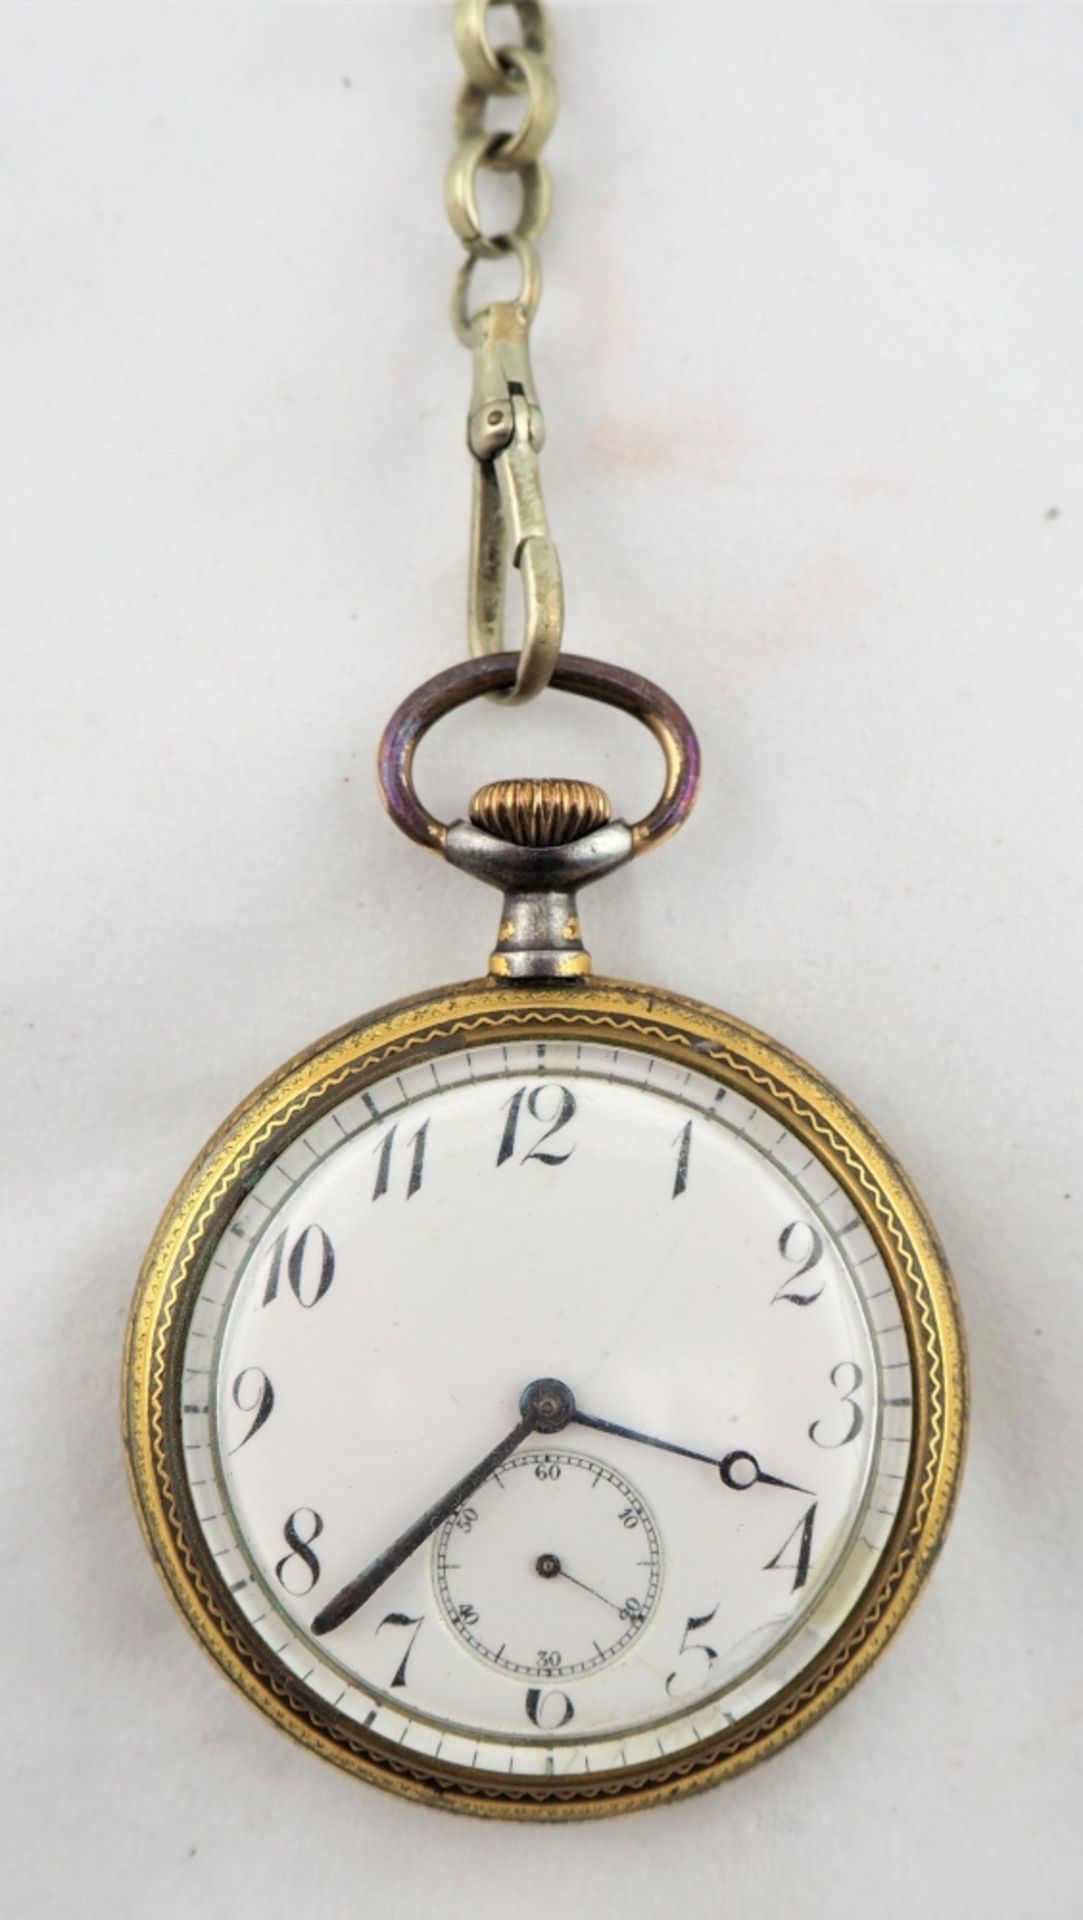 Herrentaschenuhr "Omega"um 1920, Gehäuse Metall, sehr aufwändig graviert und vergoldet.